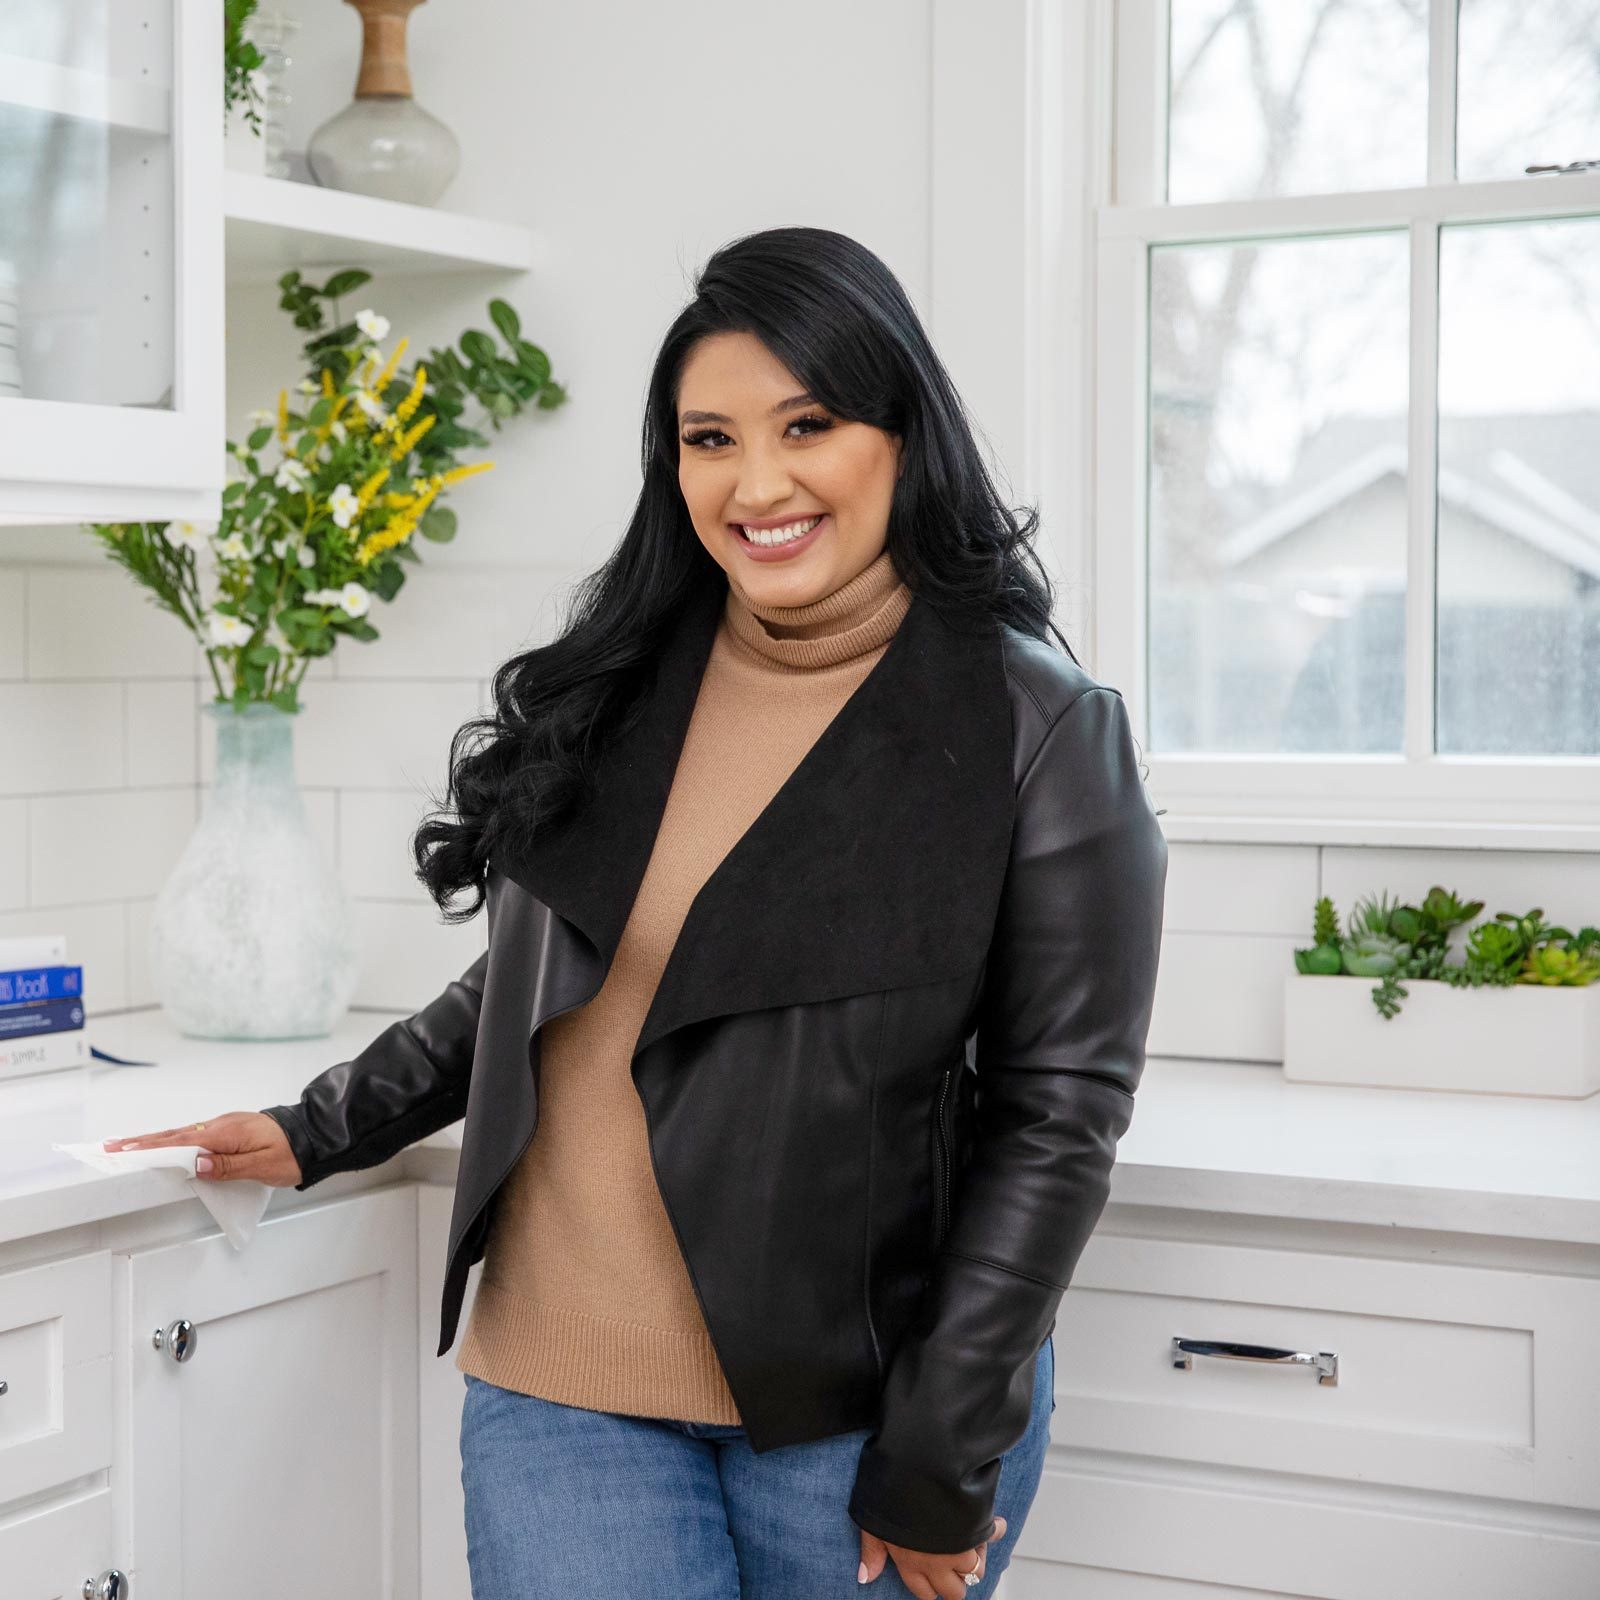 Vanesa Amaro, TikTok's Queen of Clean, Shares Her Top 10 Cleaning Tips